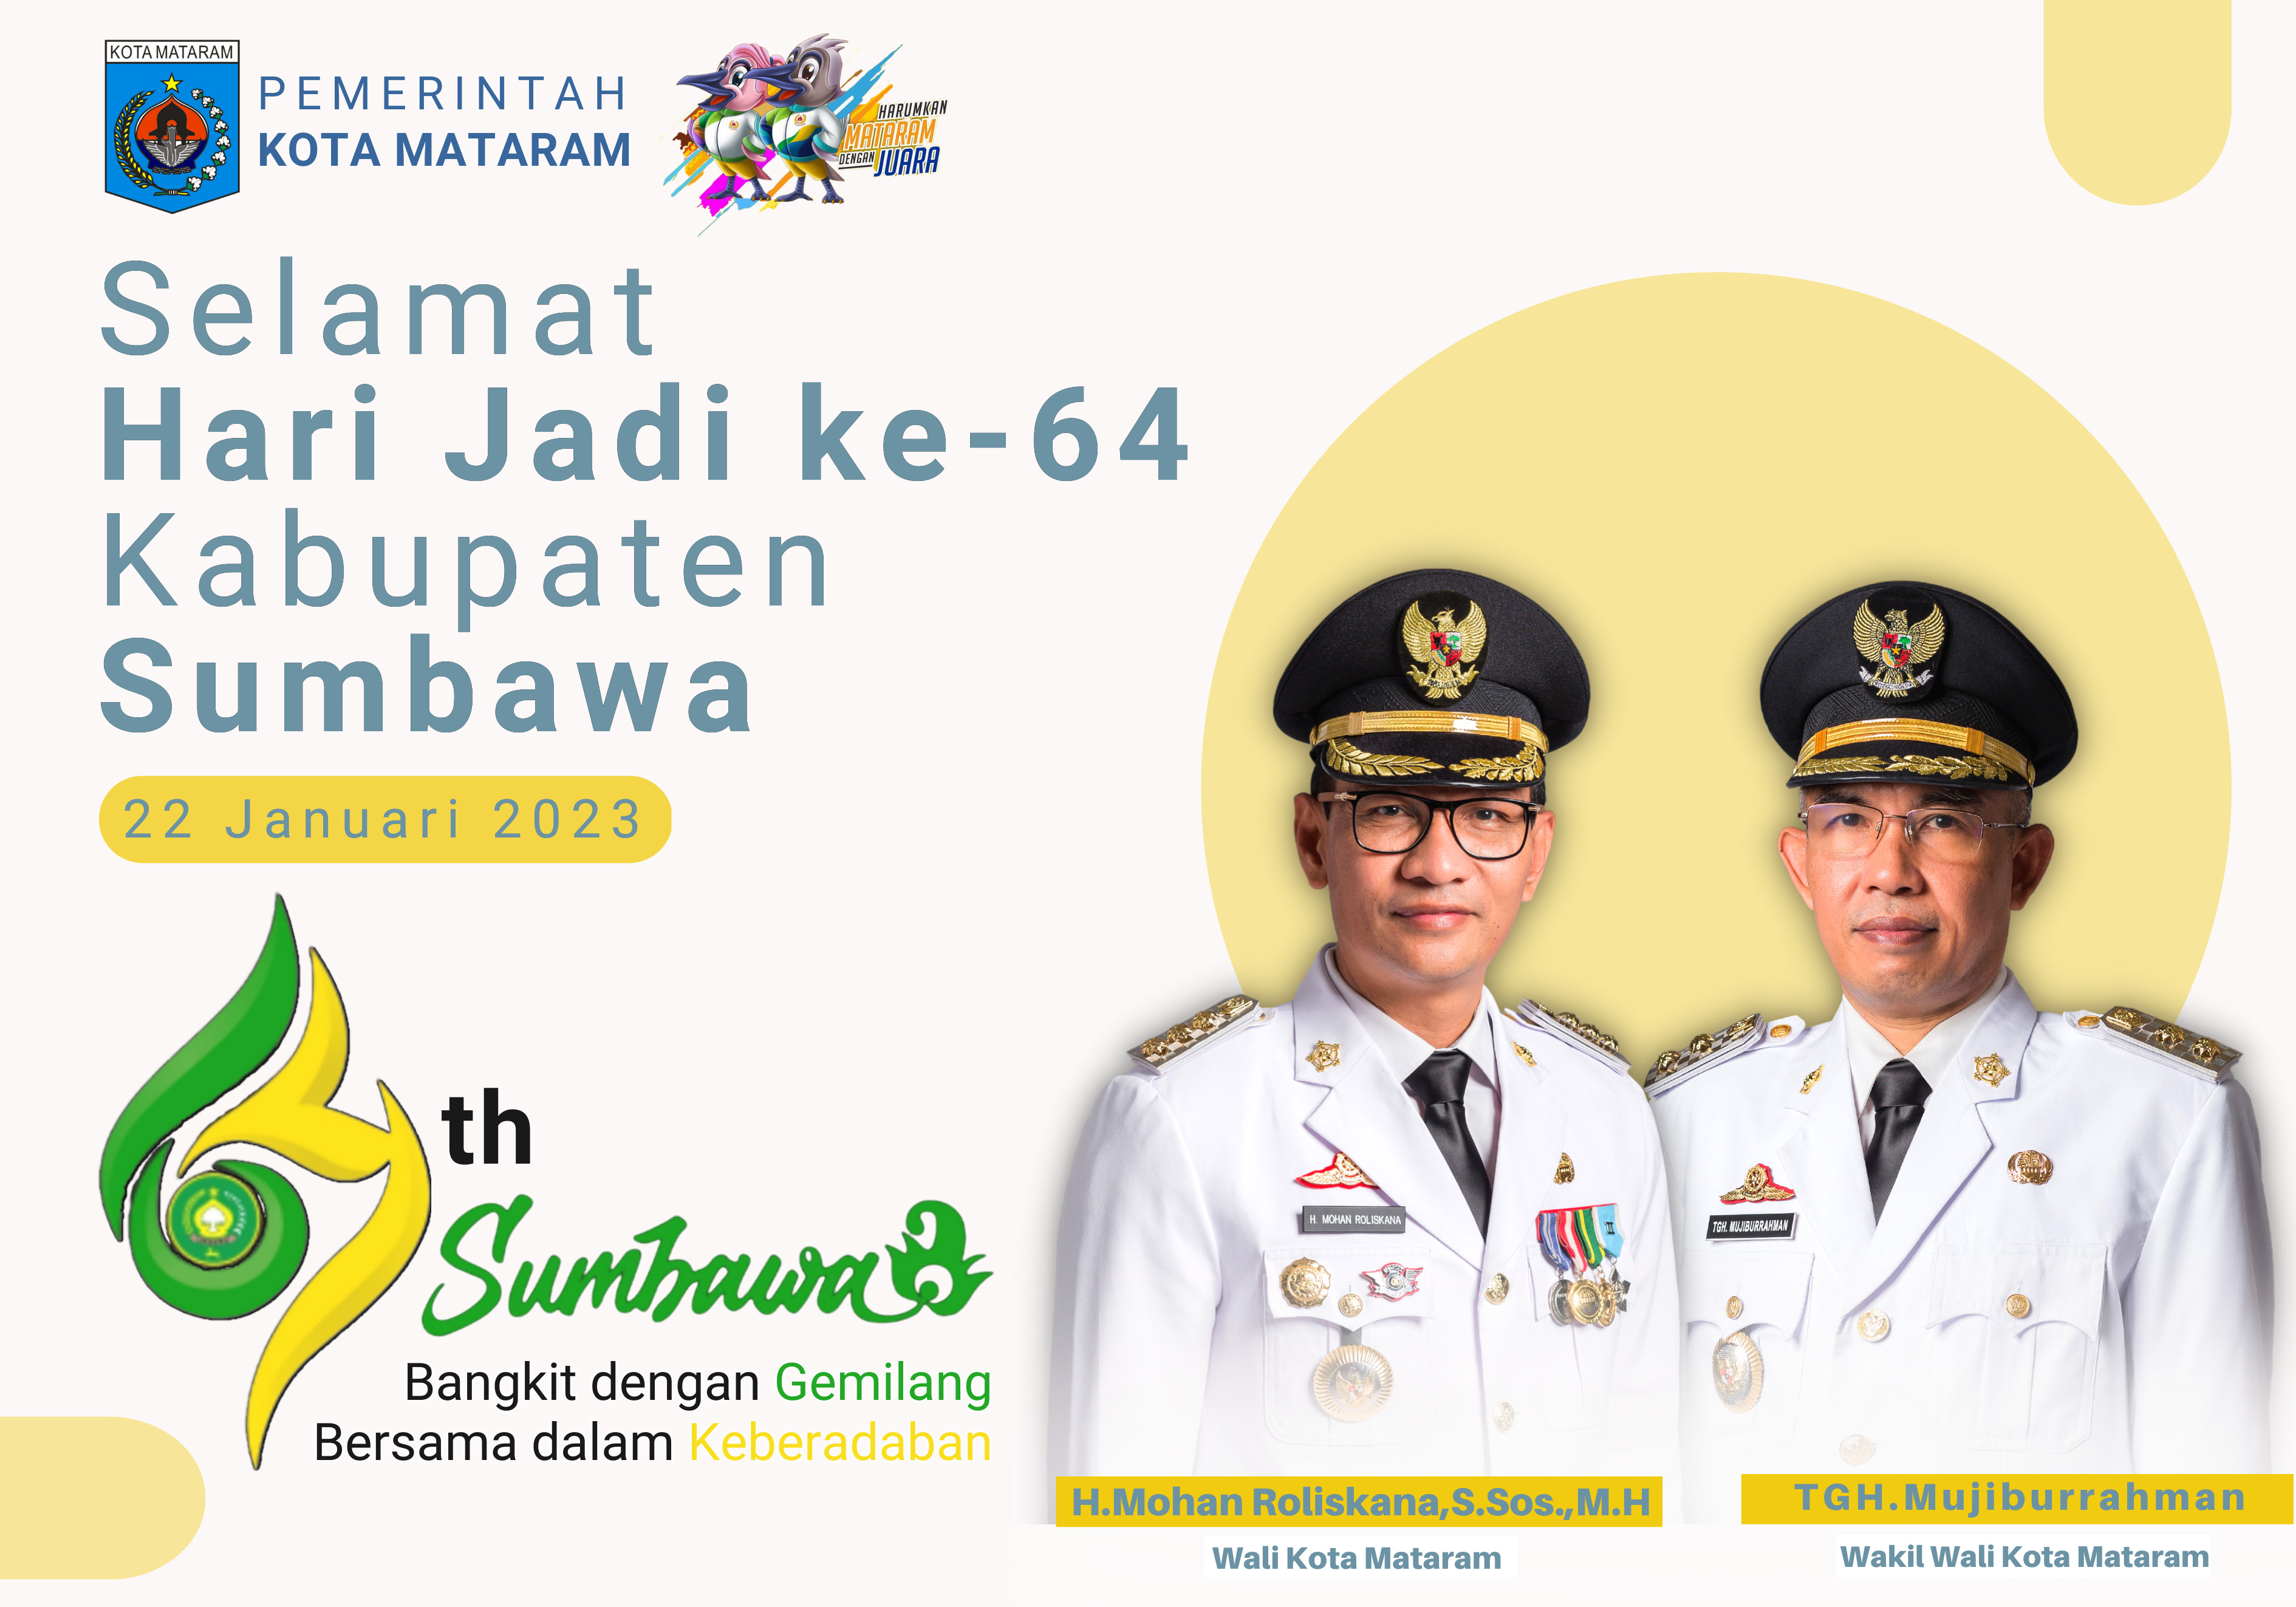 Selamat Hari Jadi Ke-64 Kabupaten Sumbawa